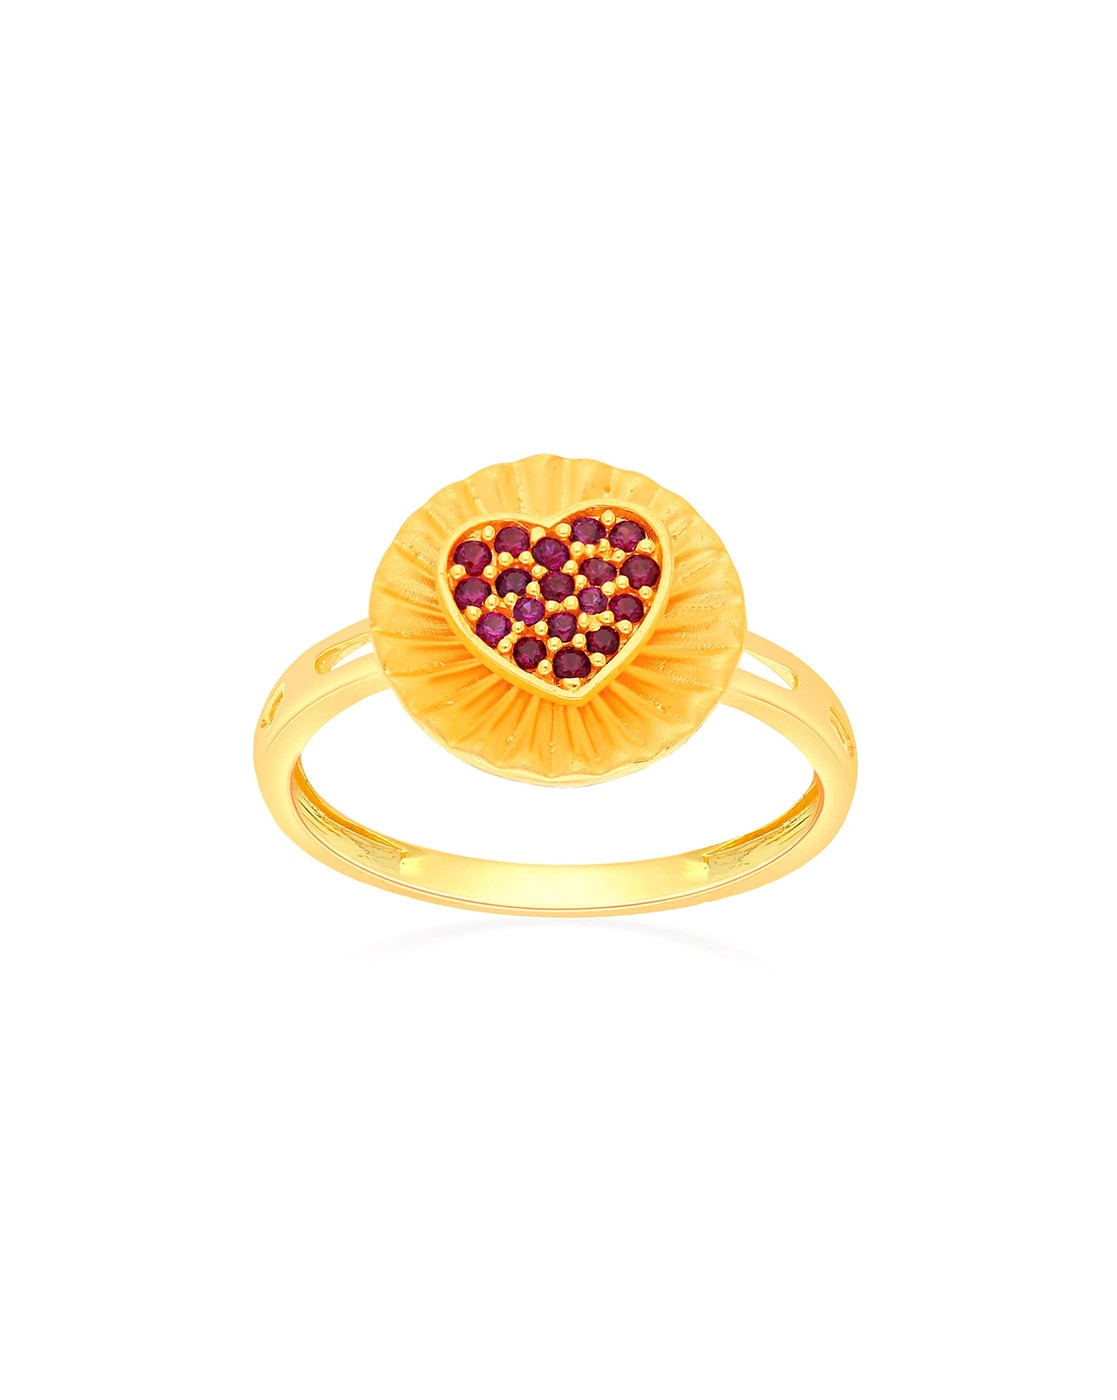 Latest diamond Vanki Ring designs with price / Malabar gold and diamonds  vanki ring designs - YouTube